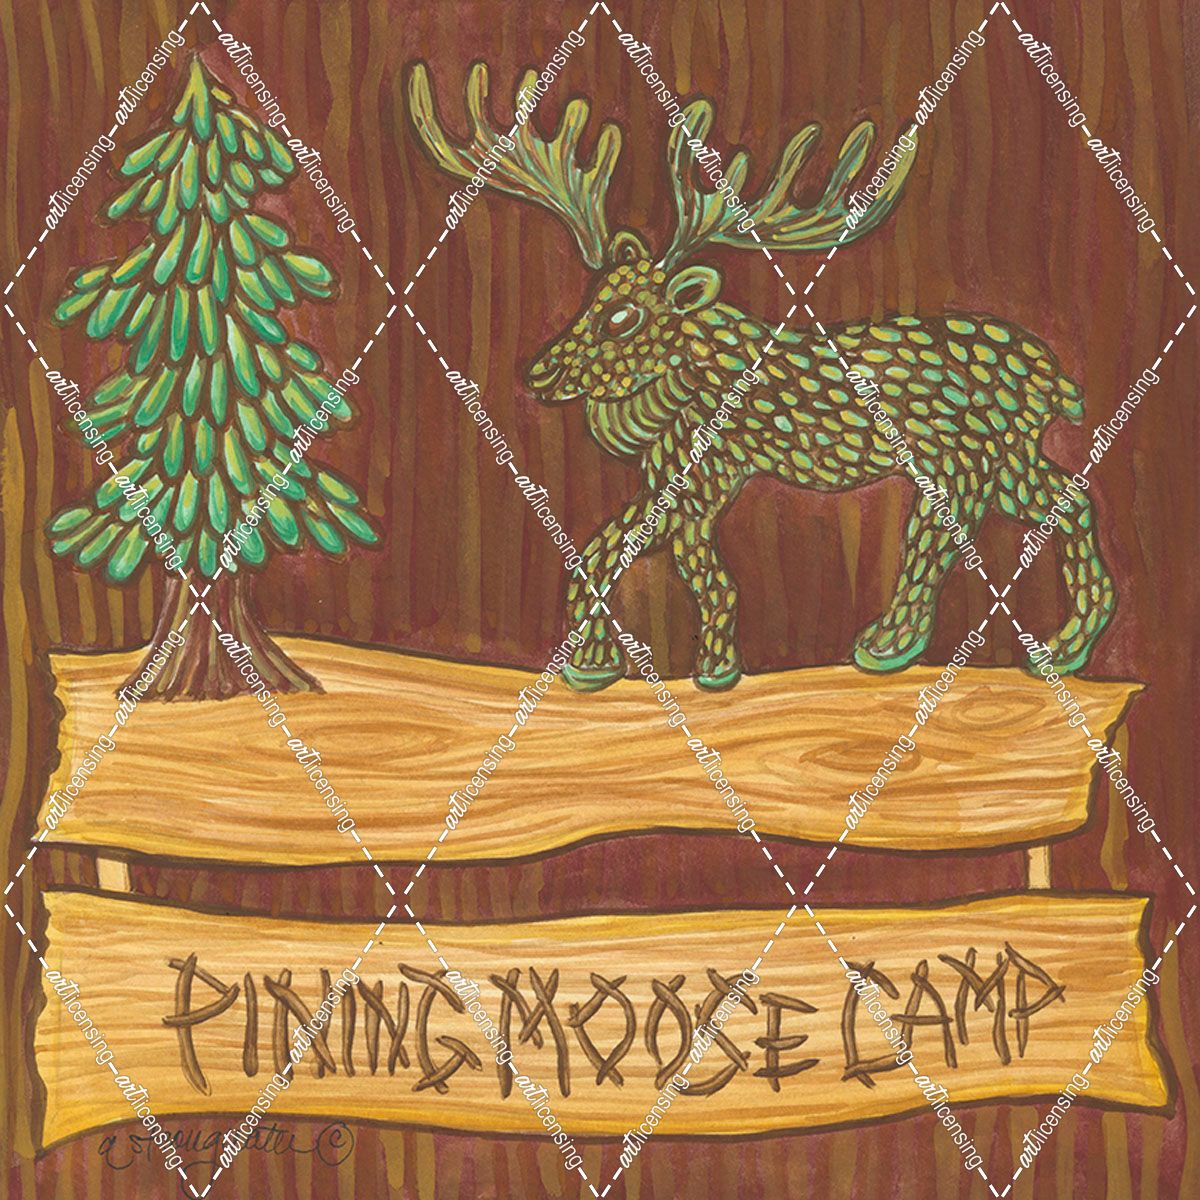 Adirondack Pining Moose Camp AP